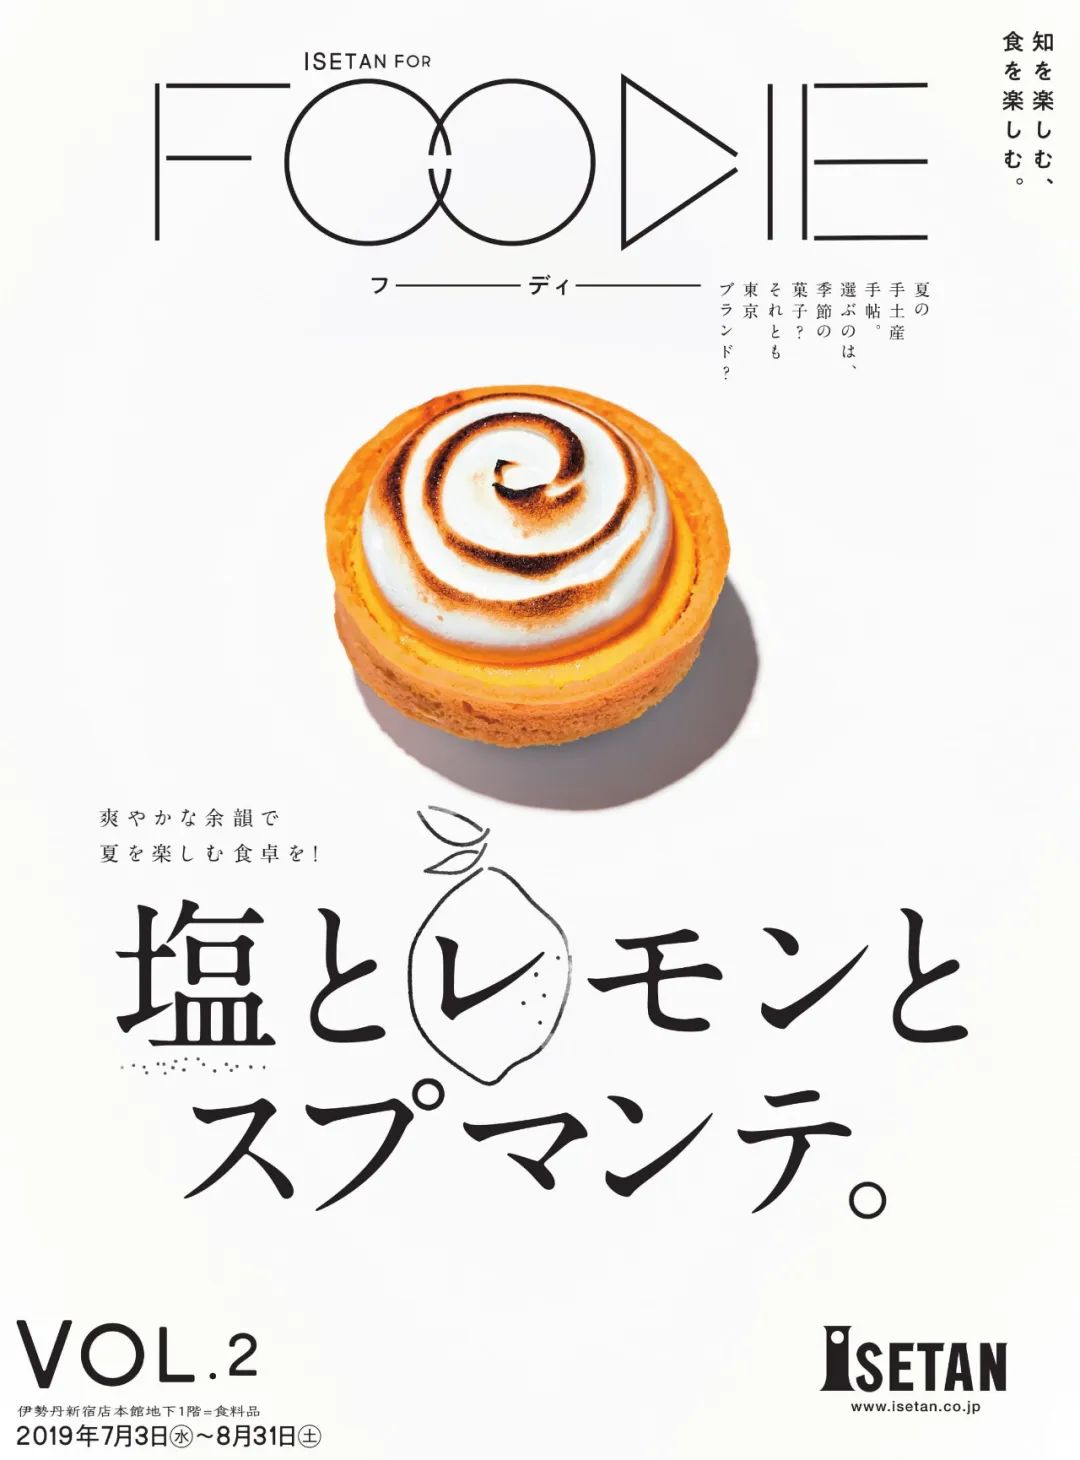 日本饮料、小吃海报设计